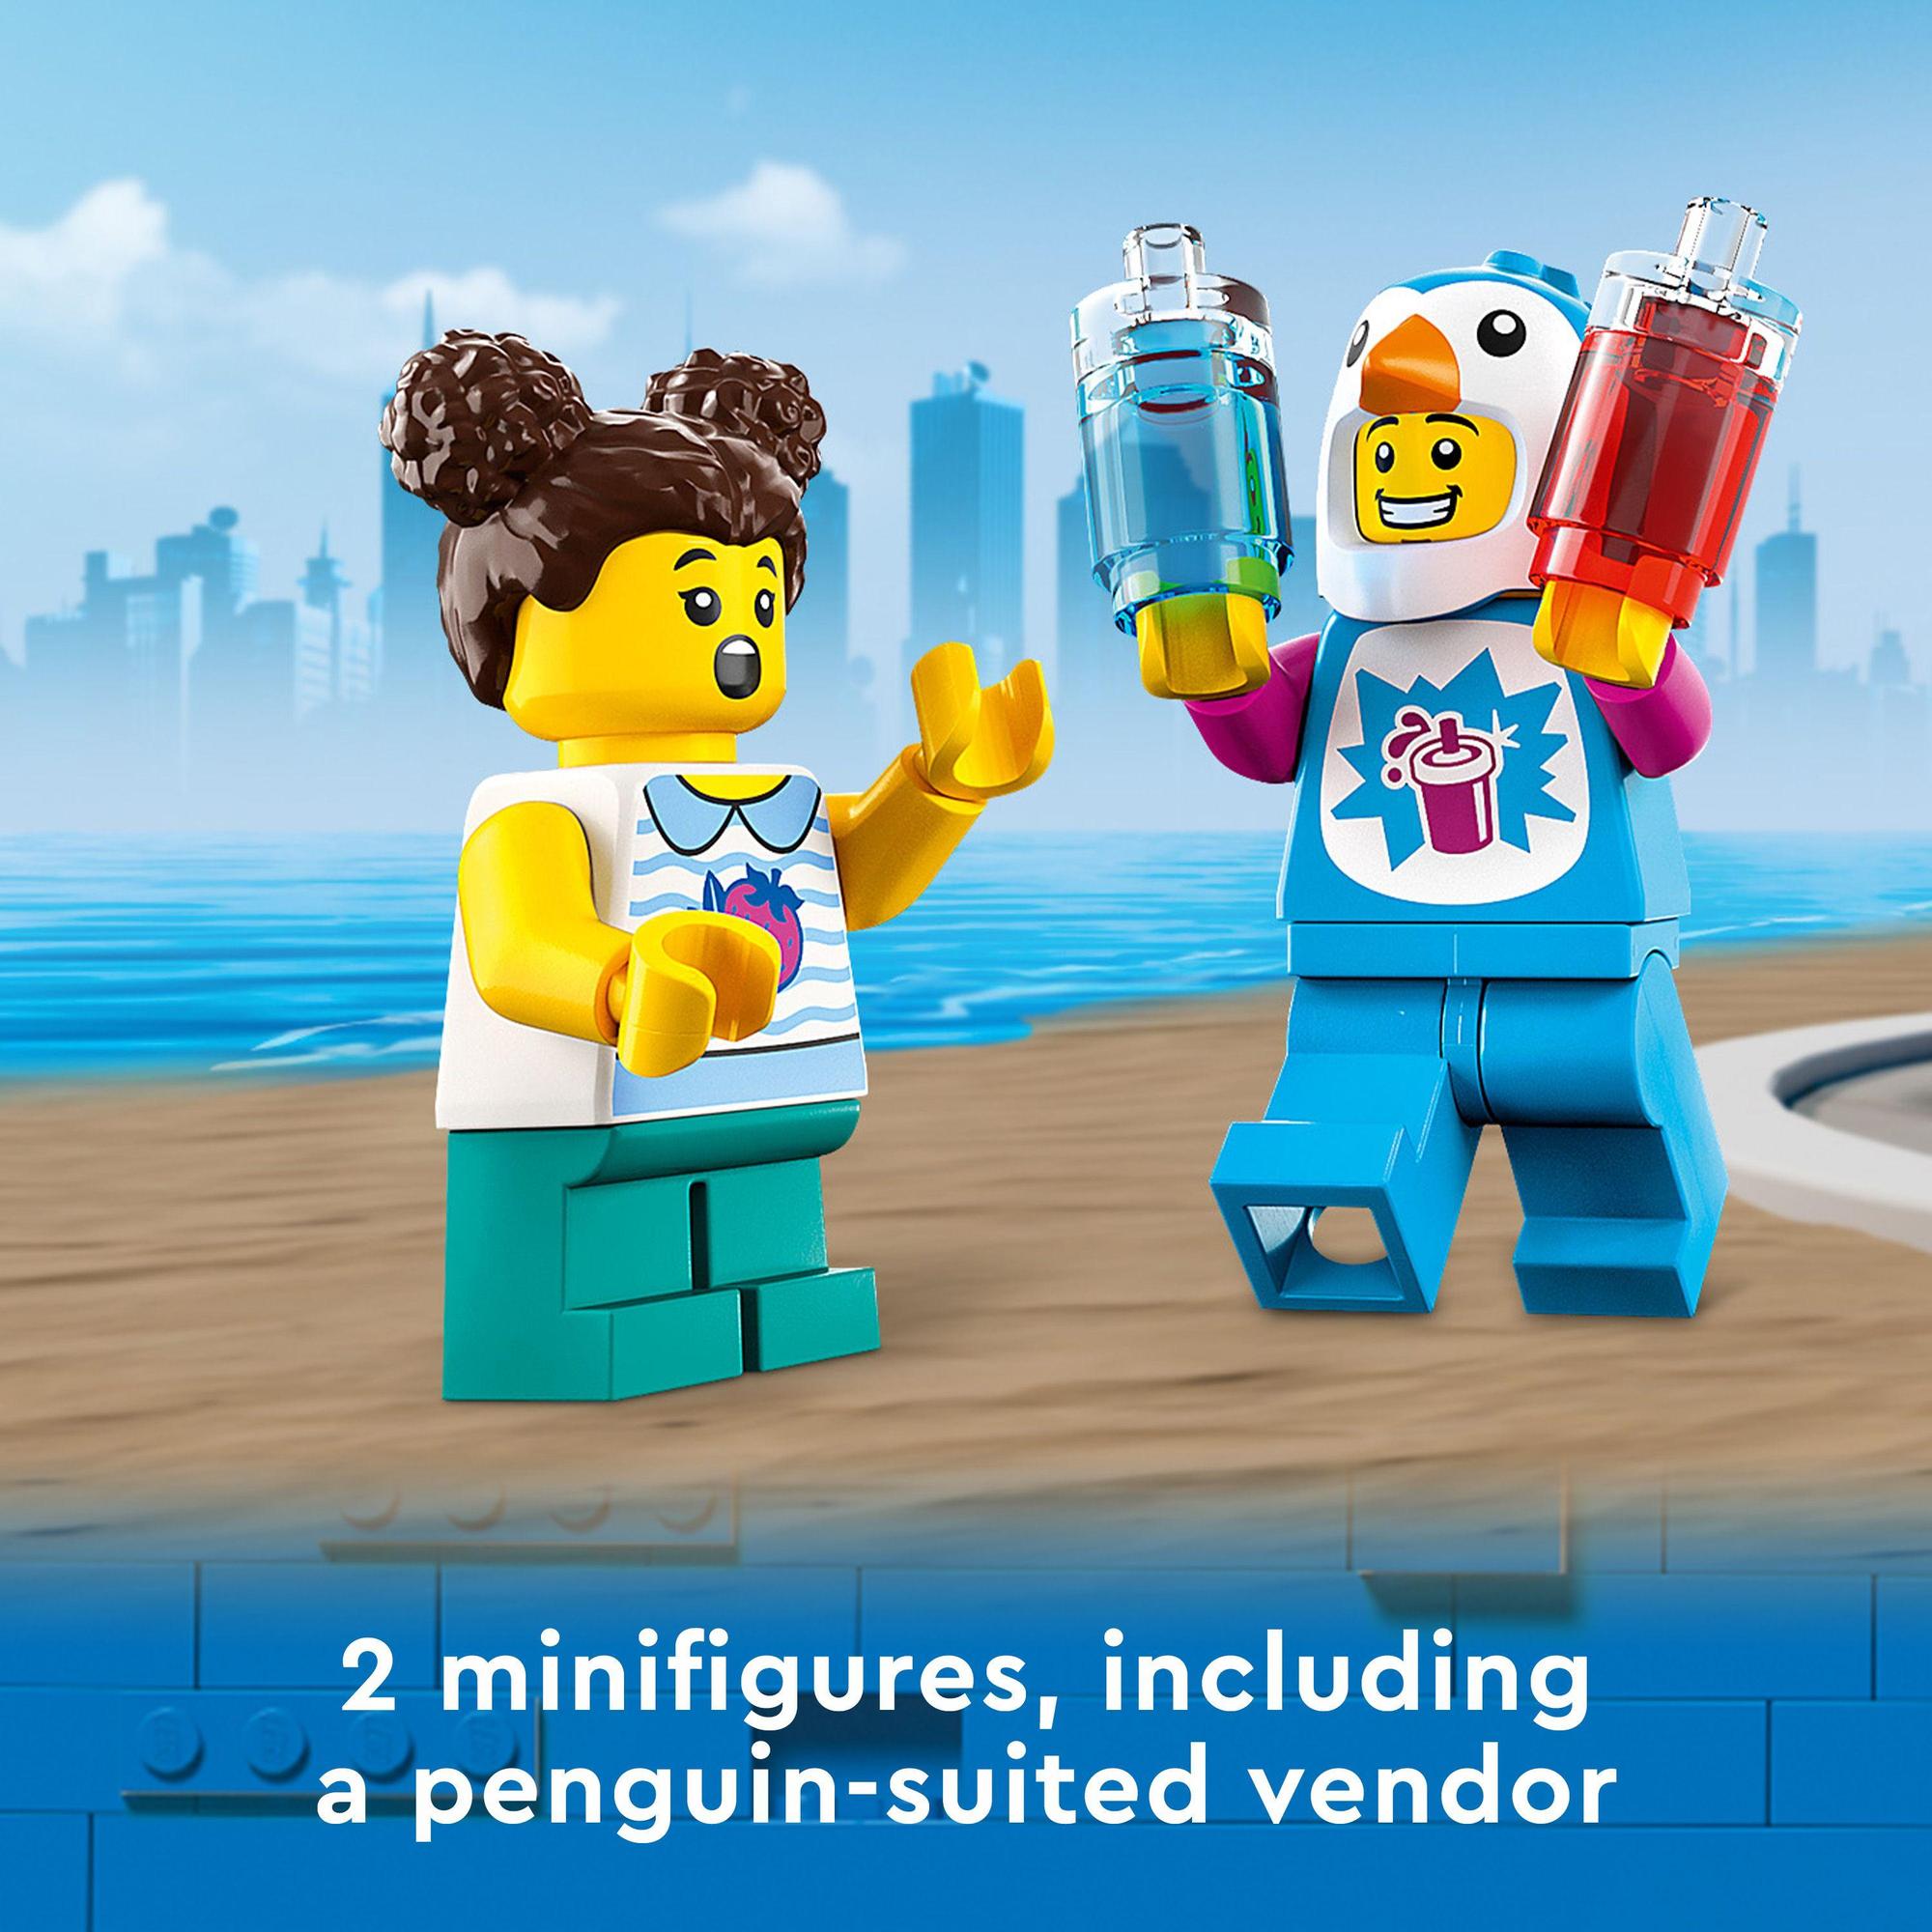 LEGO City 60384 Đồ chơi lắp ráp Xe Kem Tuyết Của Penguin (194 Chi Tiết)